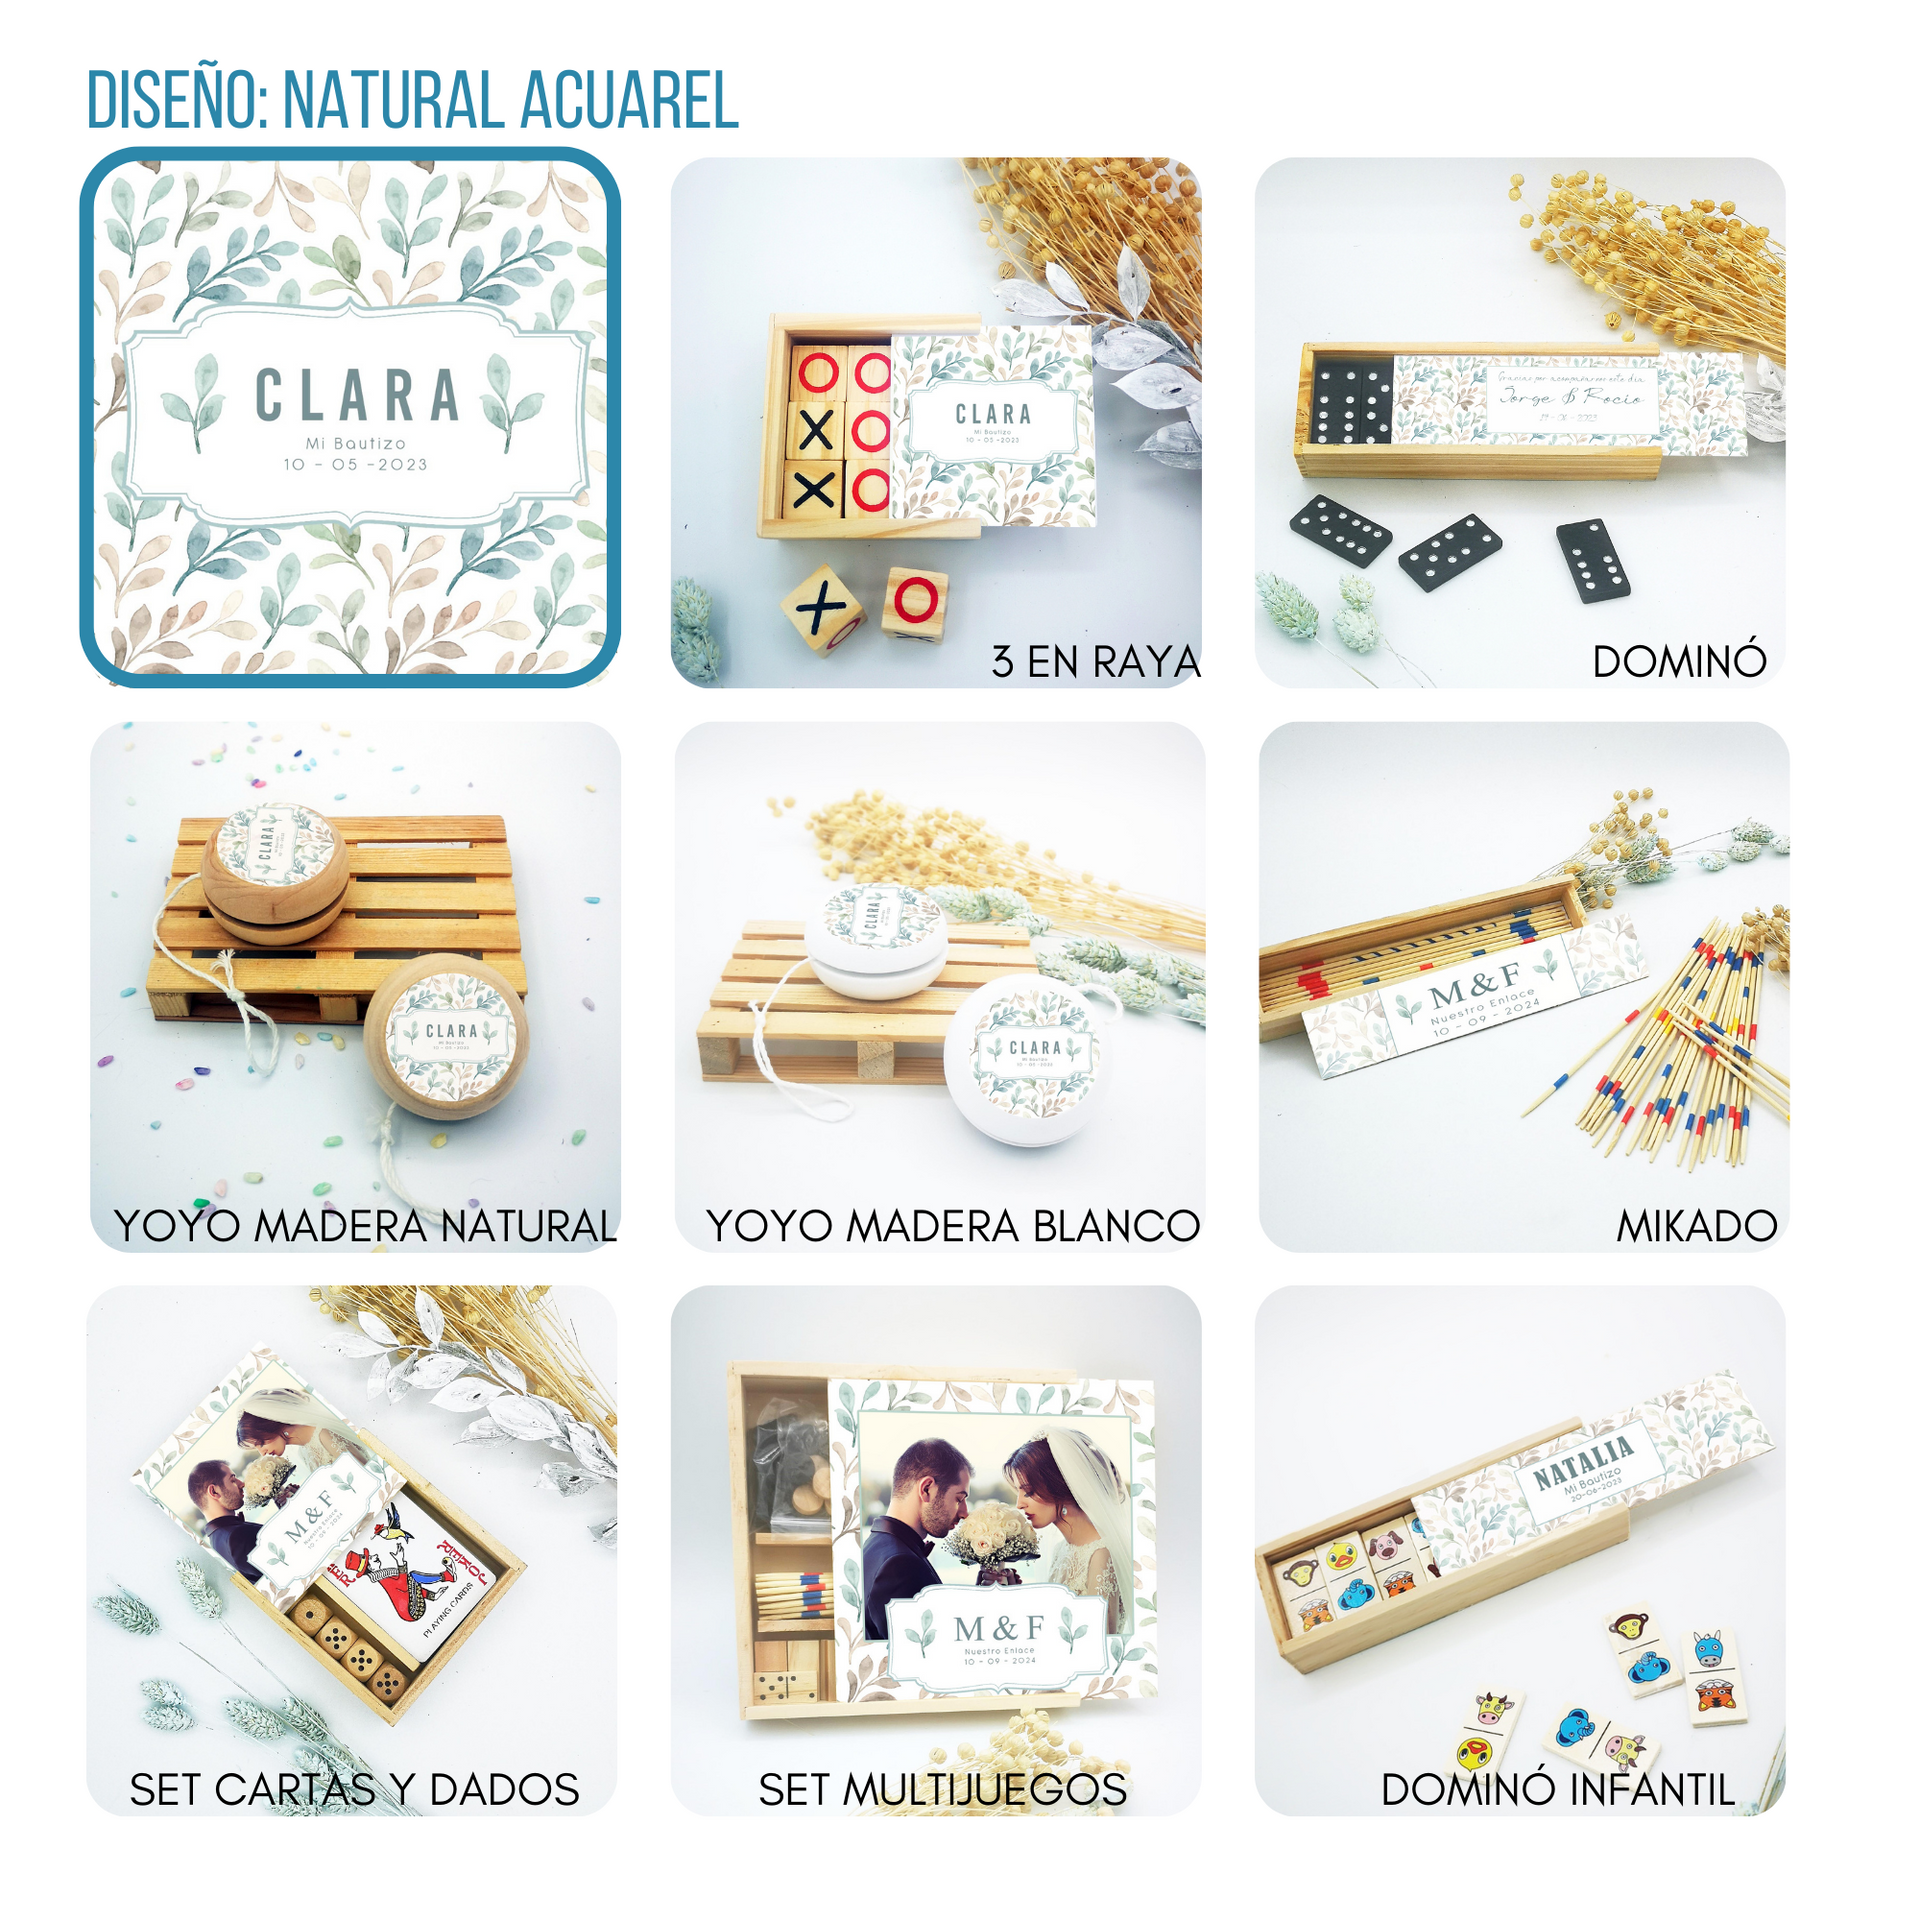 Juegos de madera personalizados para regalar como souvenir de boda, bautizo o comunión en Barcelona